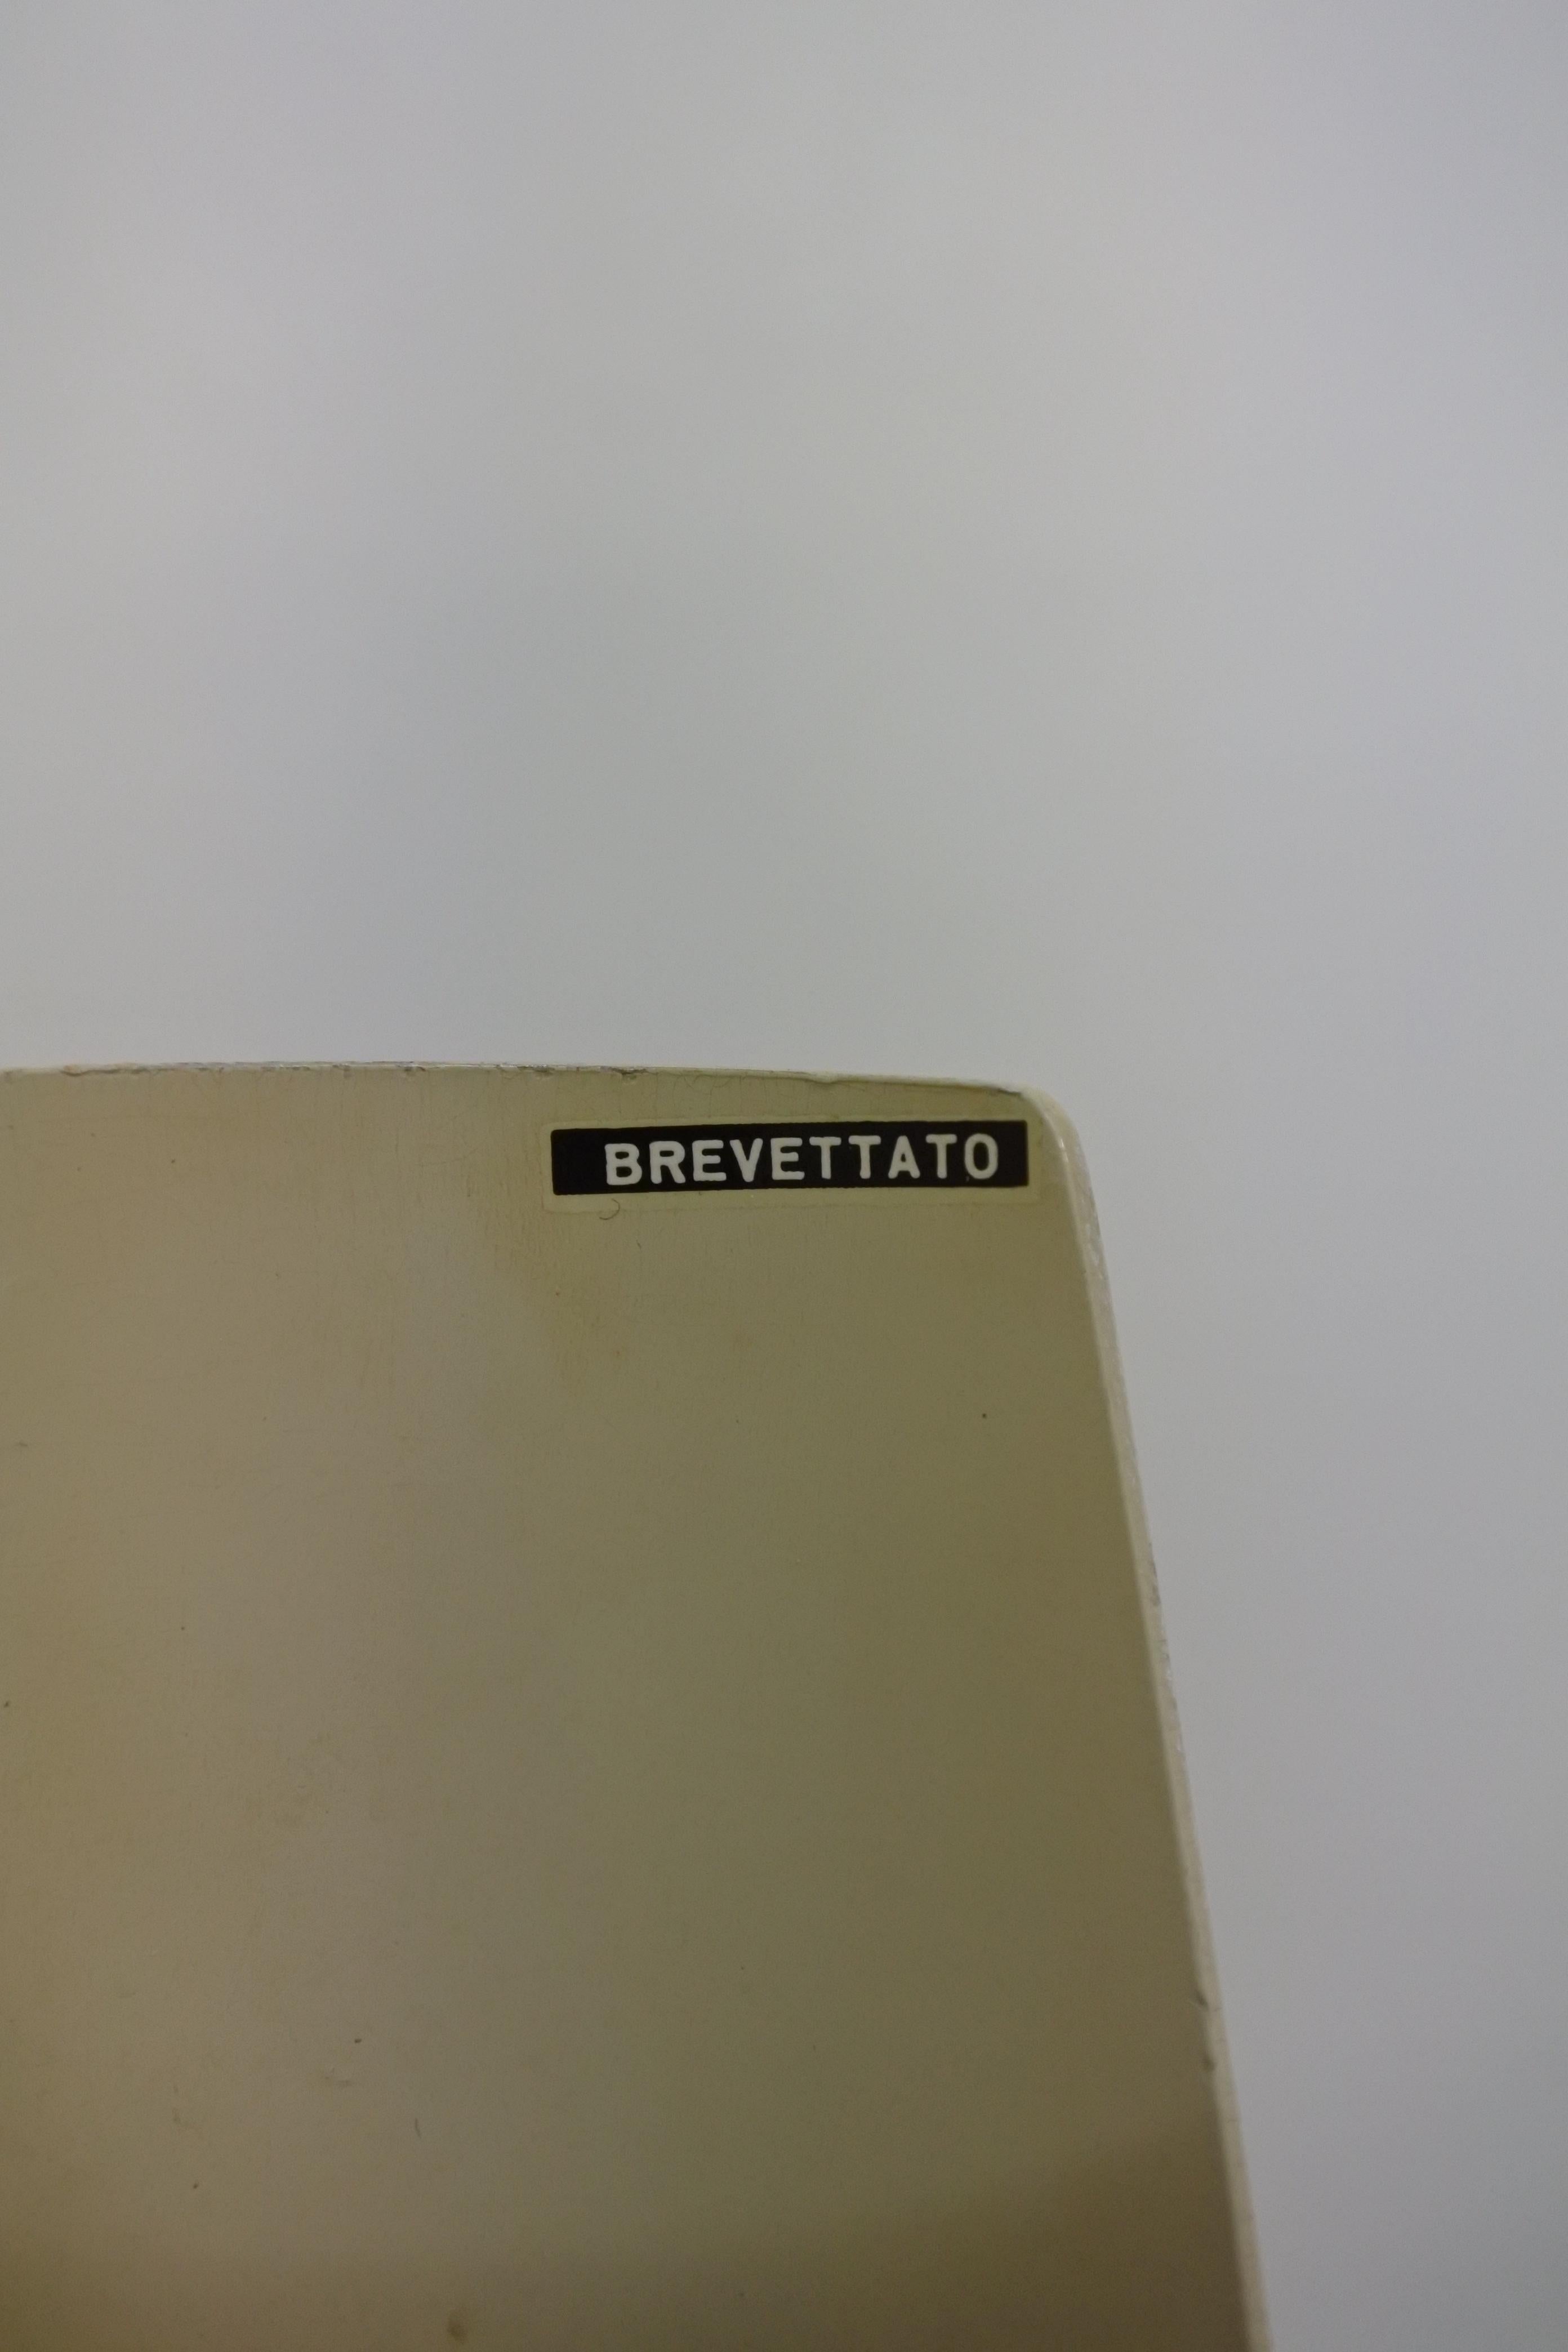 Cuir Gino Sarfatti & Arteluce, lampe de table ancienne 600/P, Italie, 1966